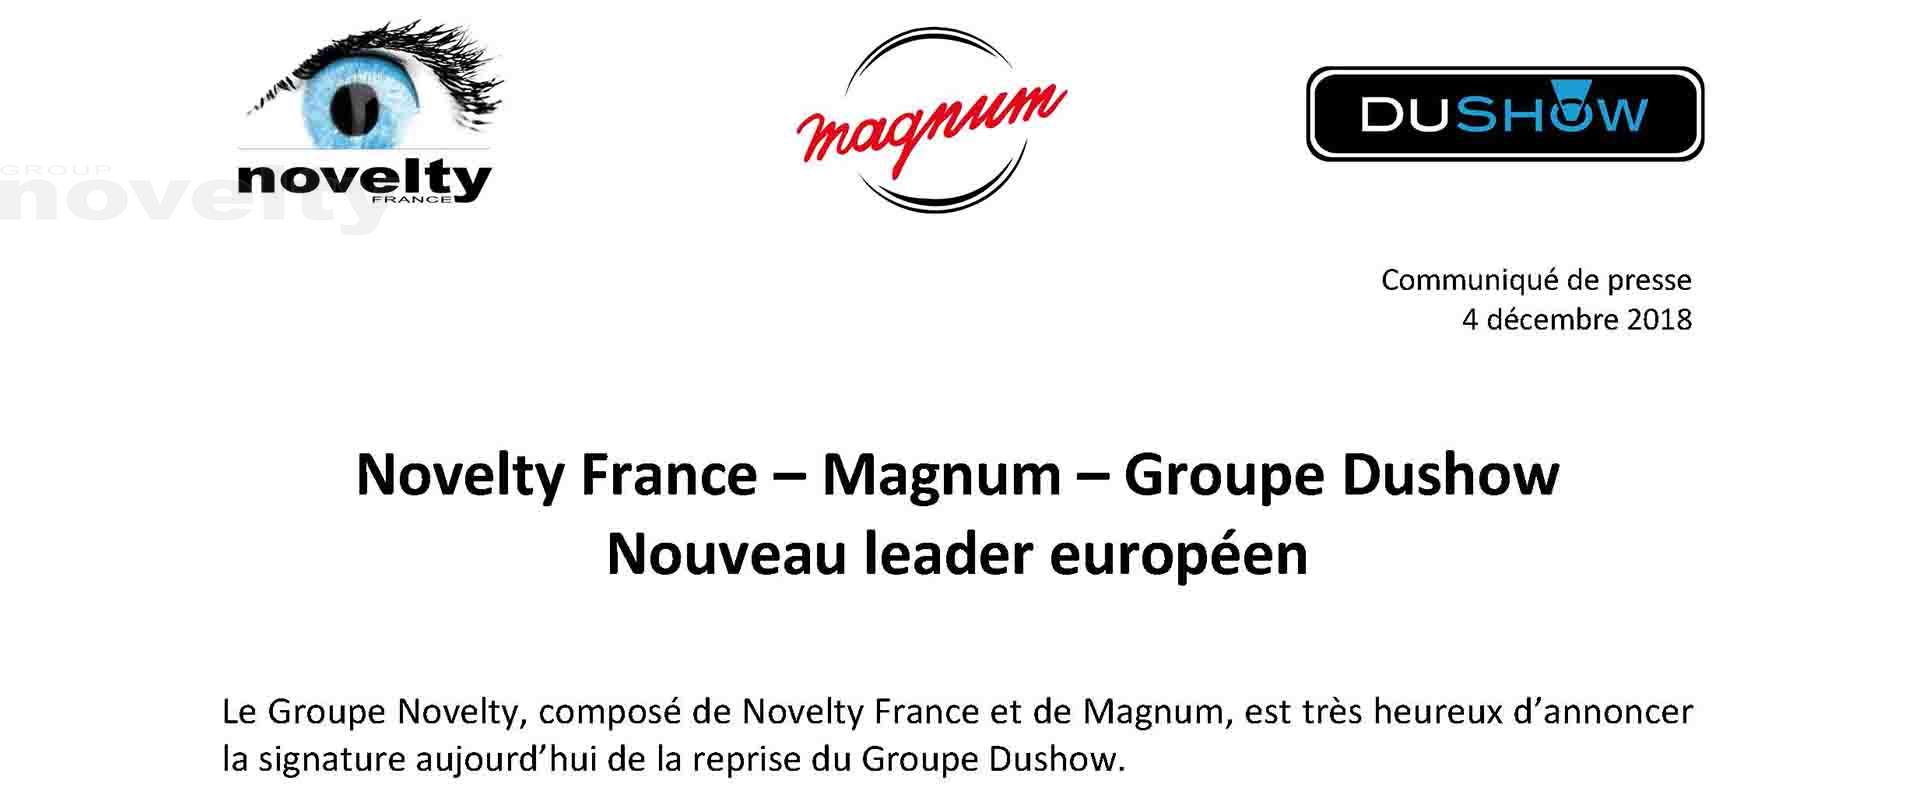 Visuel Novelty France - Magnum - Groupe Dushow | Nouveau leader européen 